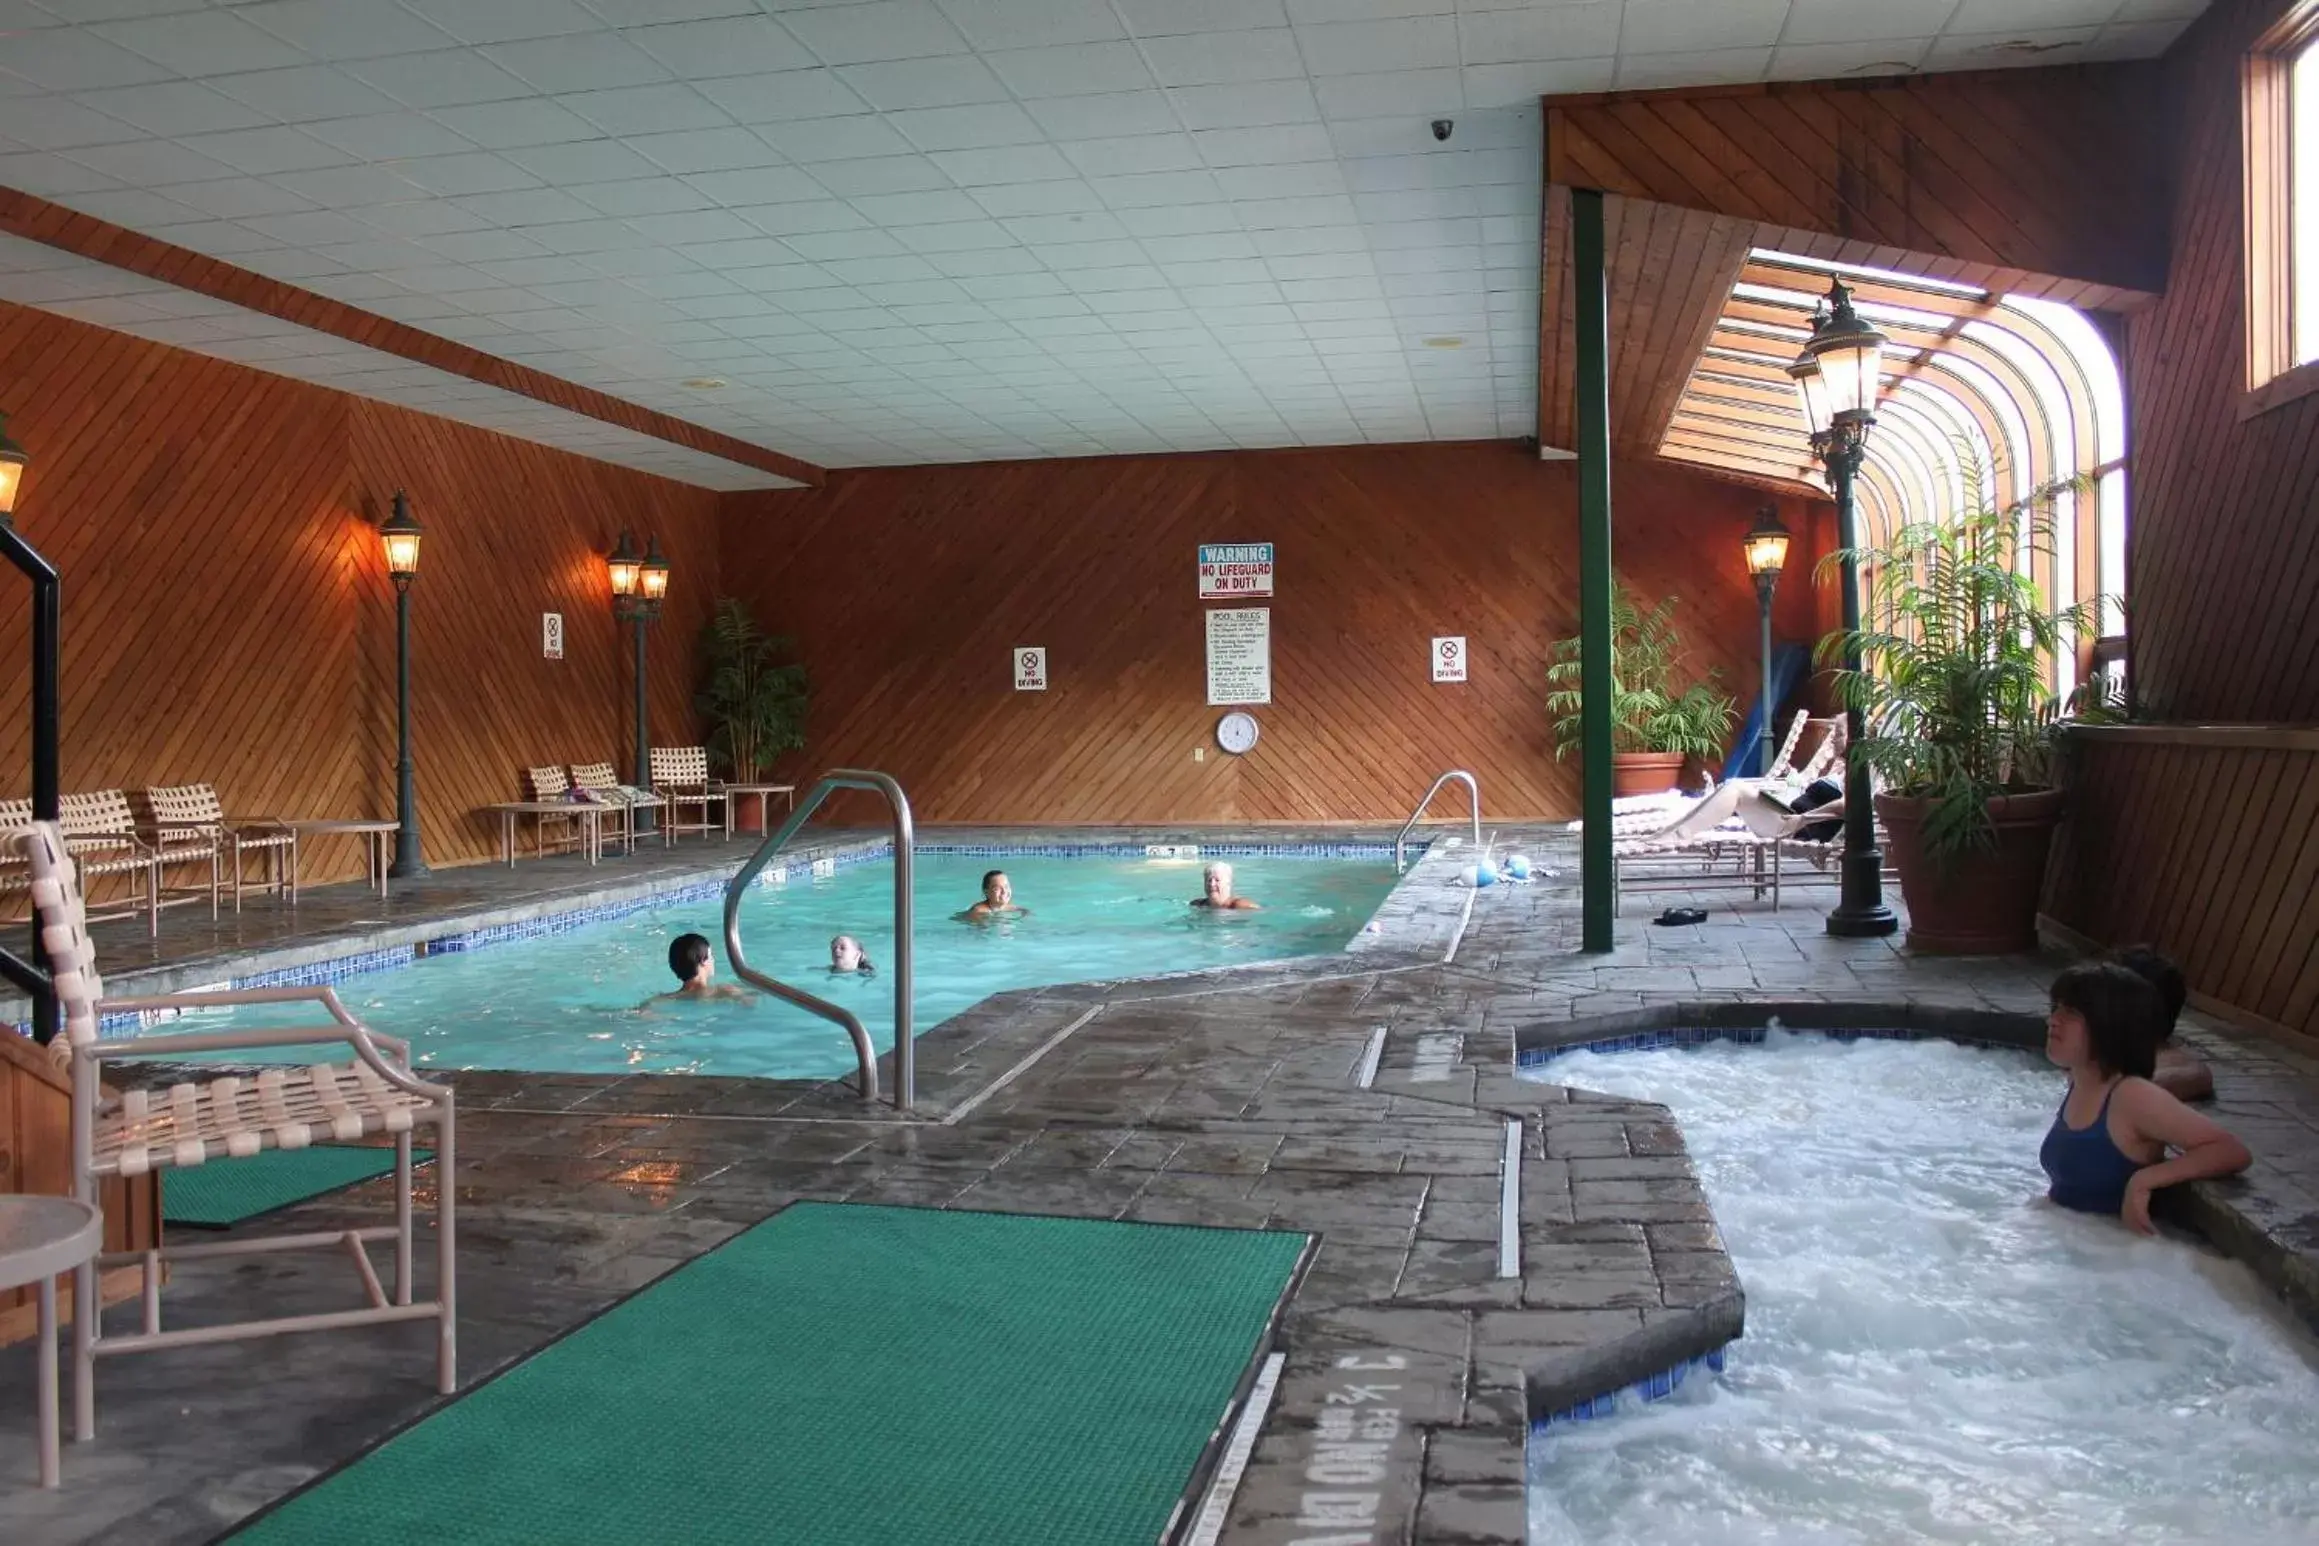 Hot Tub, Swimming Pool in Nordic Inn Condominium Resort